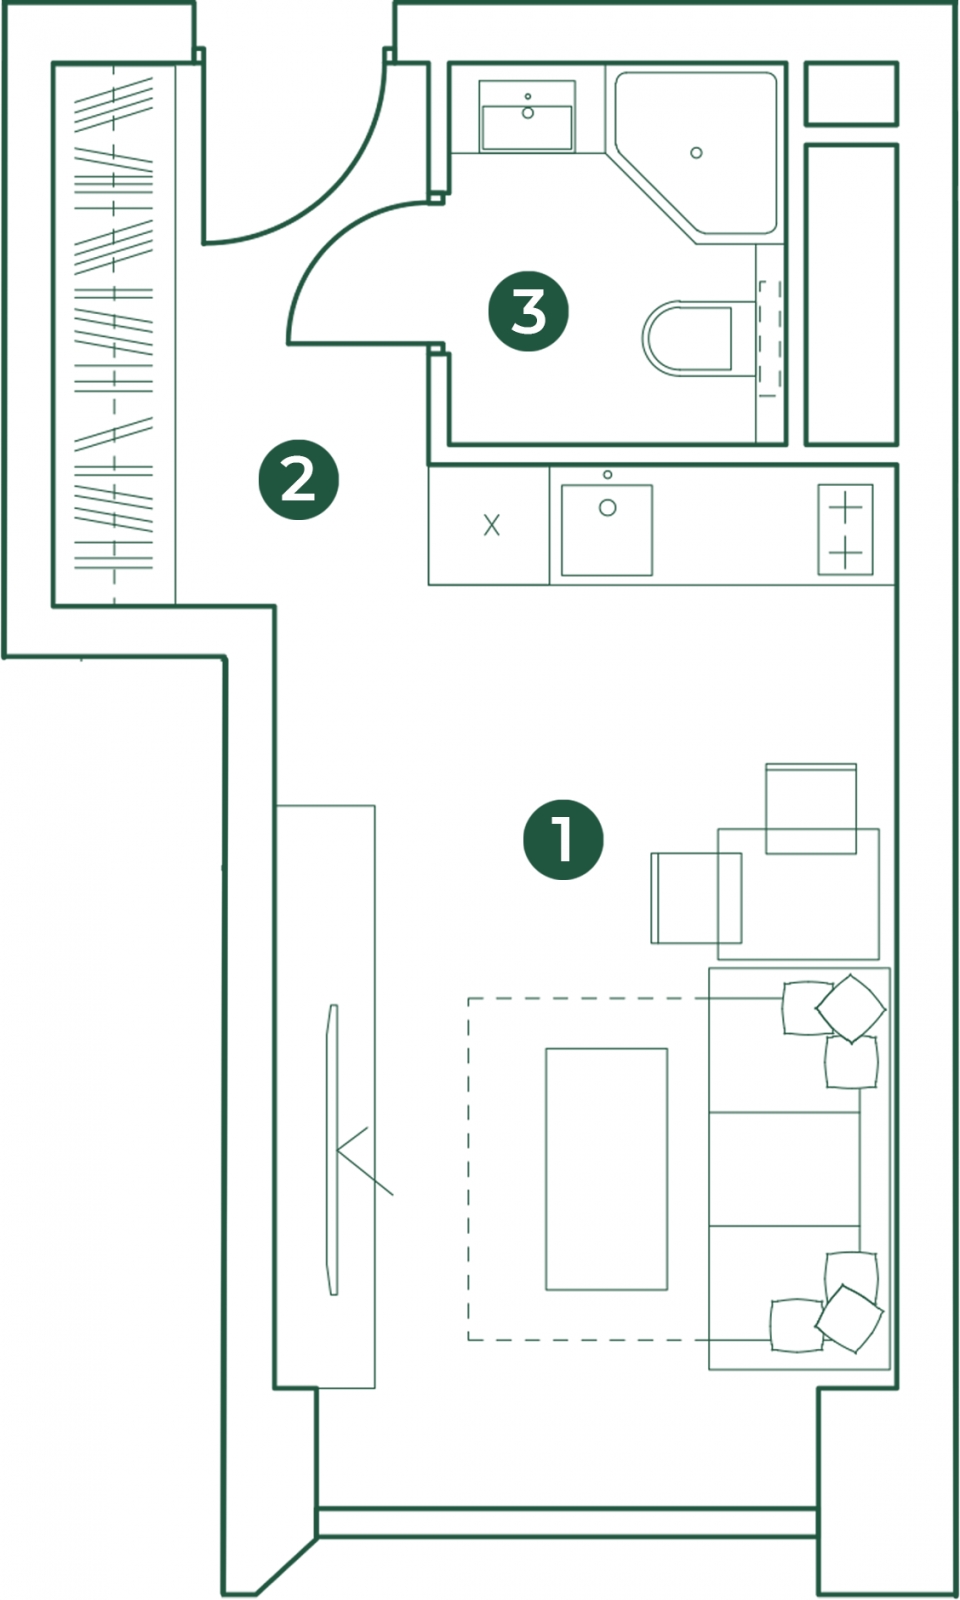 1-комнатная квартира в ЖК N'ICE LOFT на 3 этаже в 1 секции. Сдача в 1 кв. 2024 г.